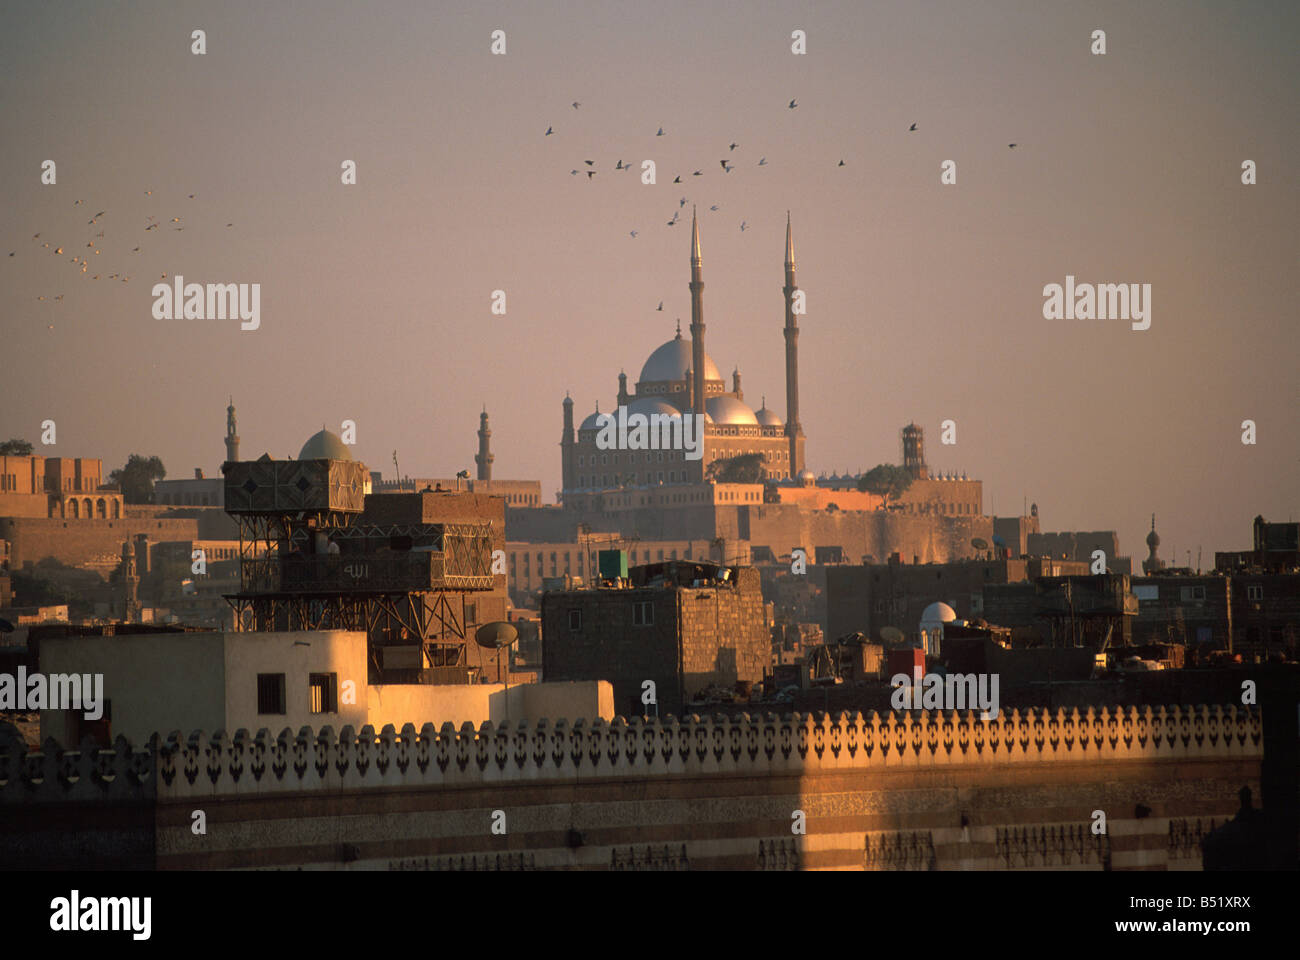 Minareti di Muhammad Ali telai moschea oltre il Cairo, Egitto Foto Stock